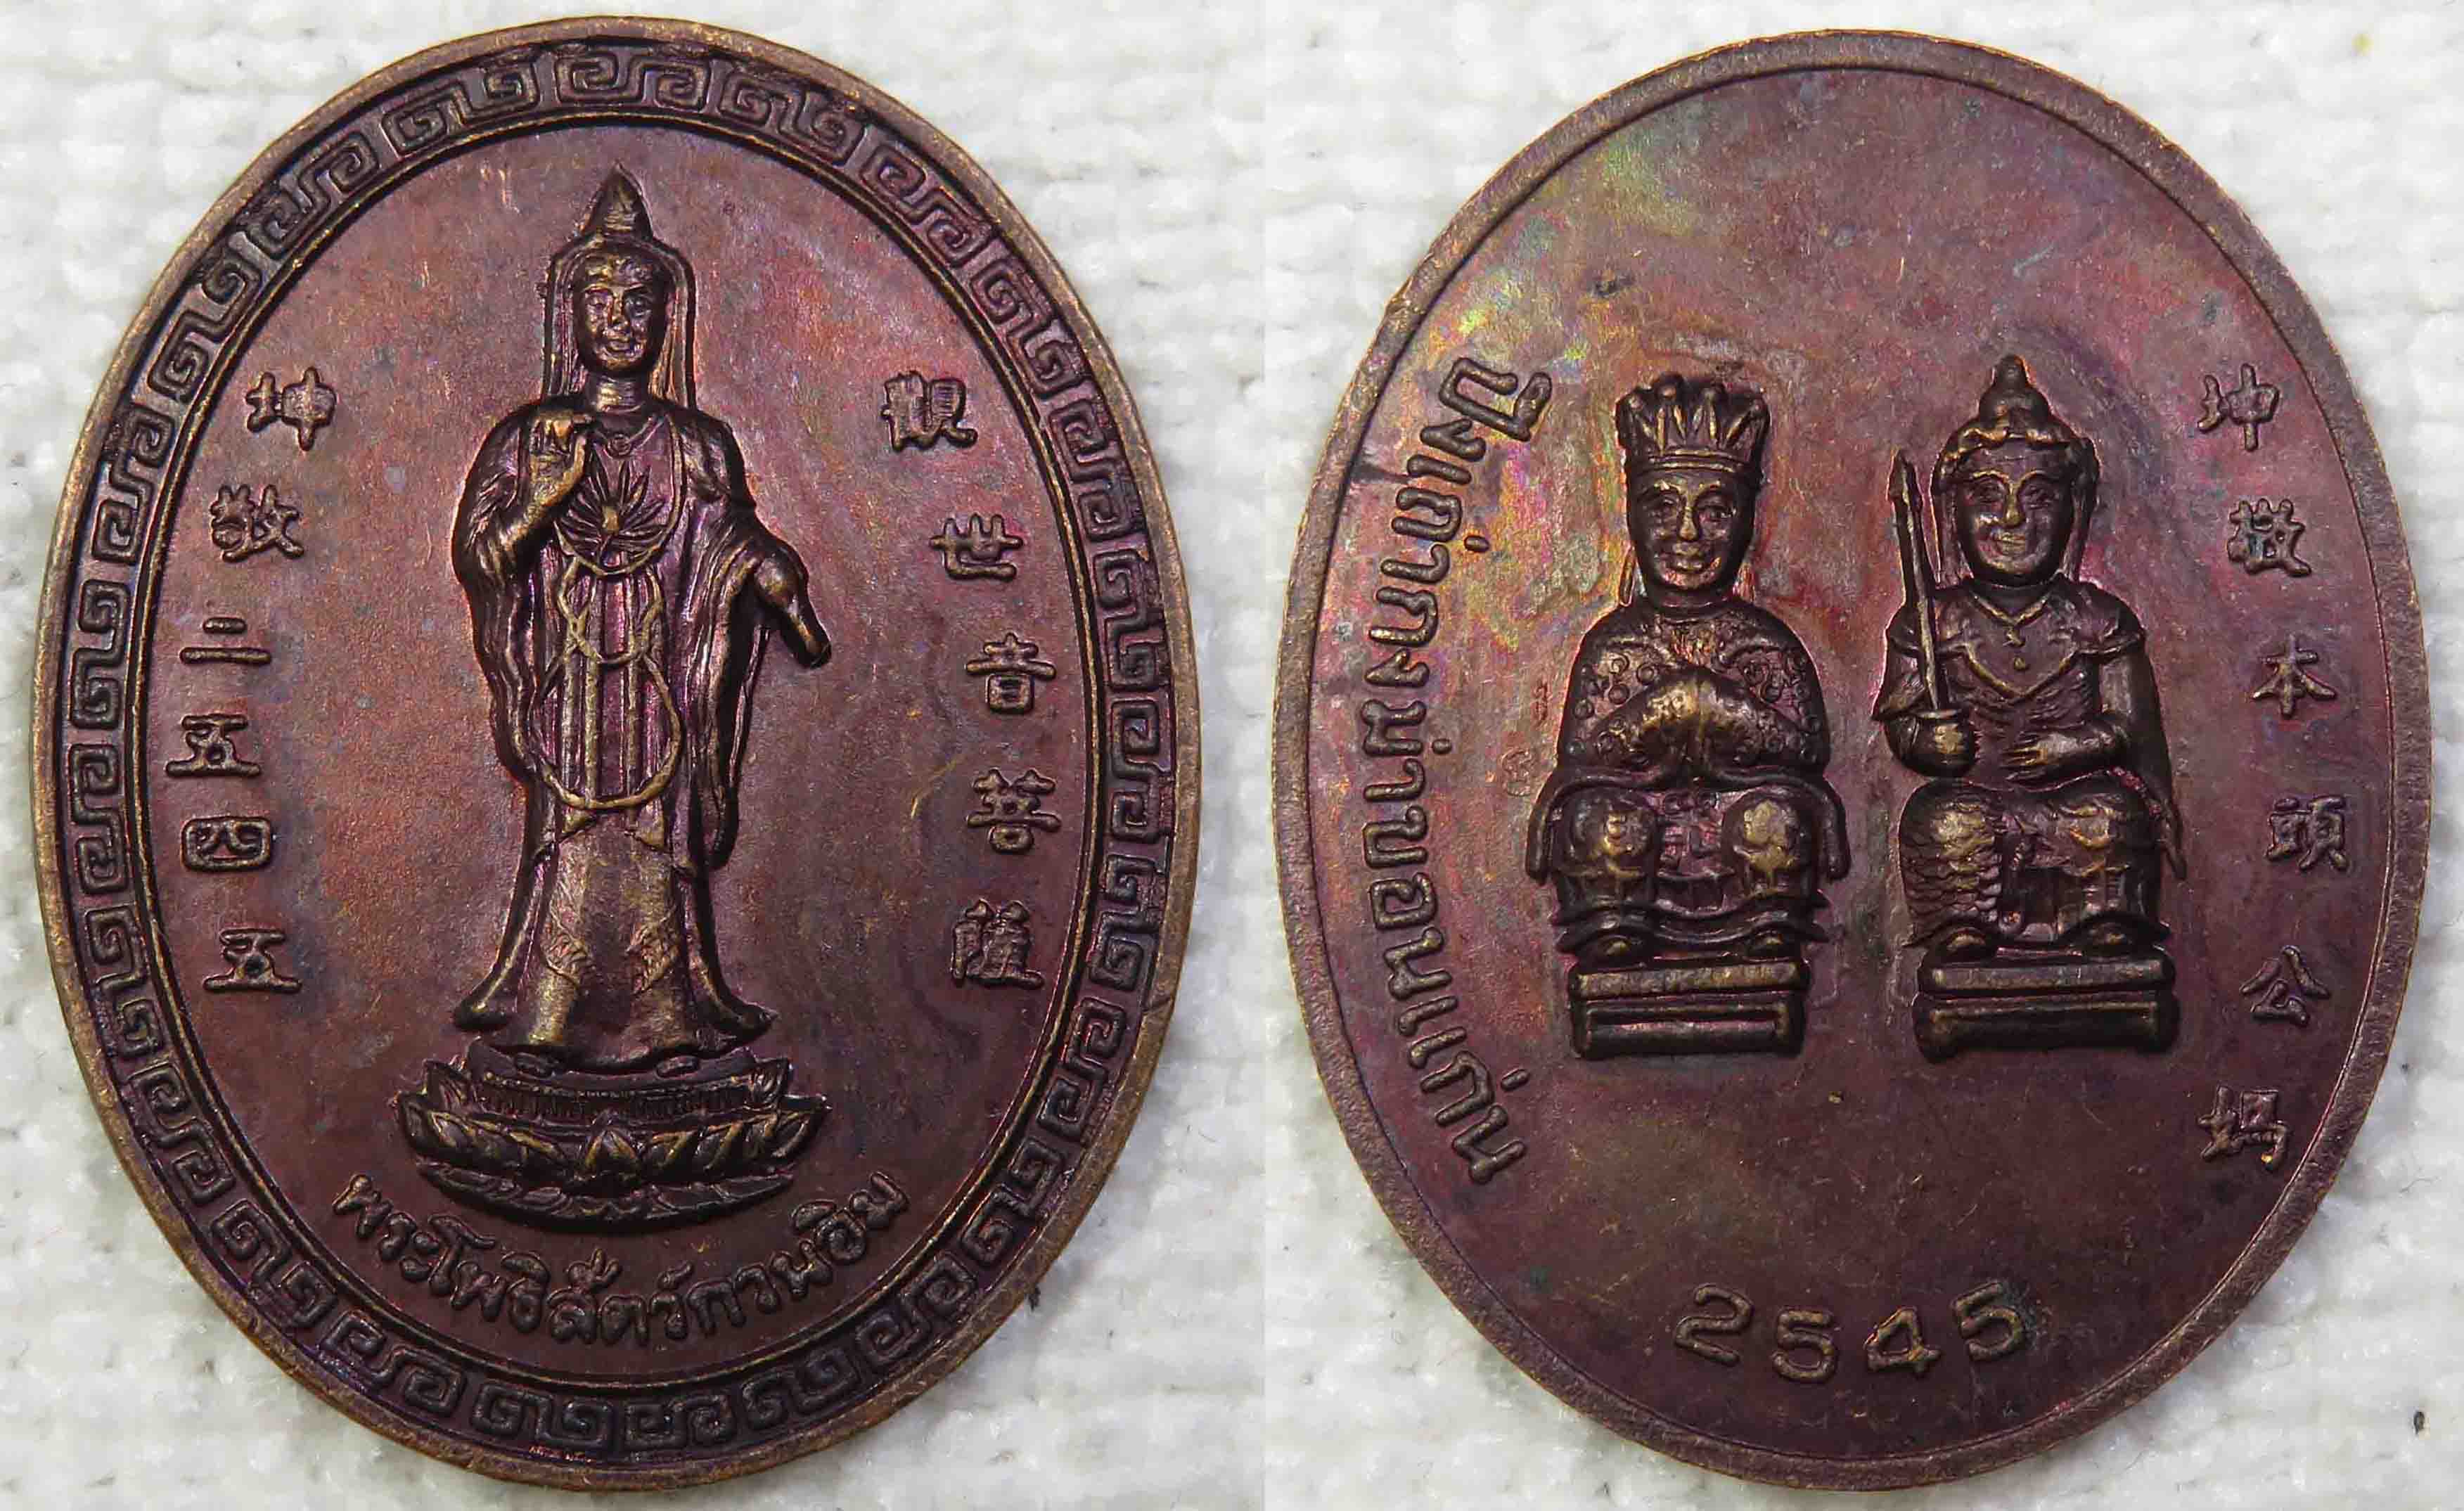 เหรียญ เจ้าแม่กวนอิม ศาลเจ้าปึงเถ่ากง-ม่า จ.ขอนแก่น ปี 2545